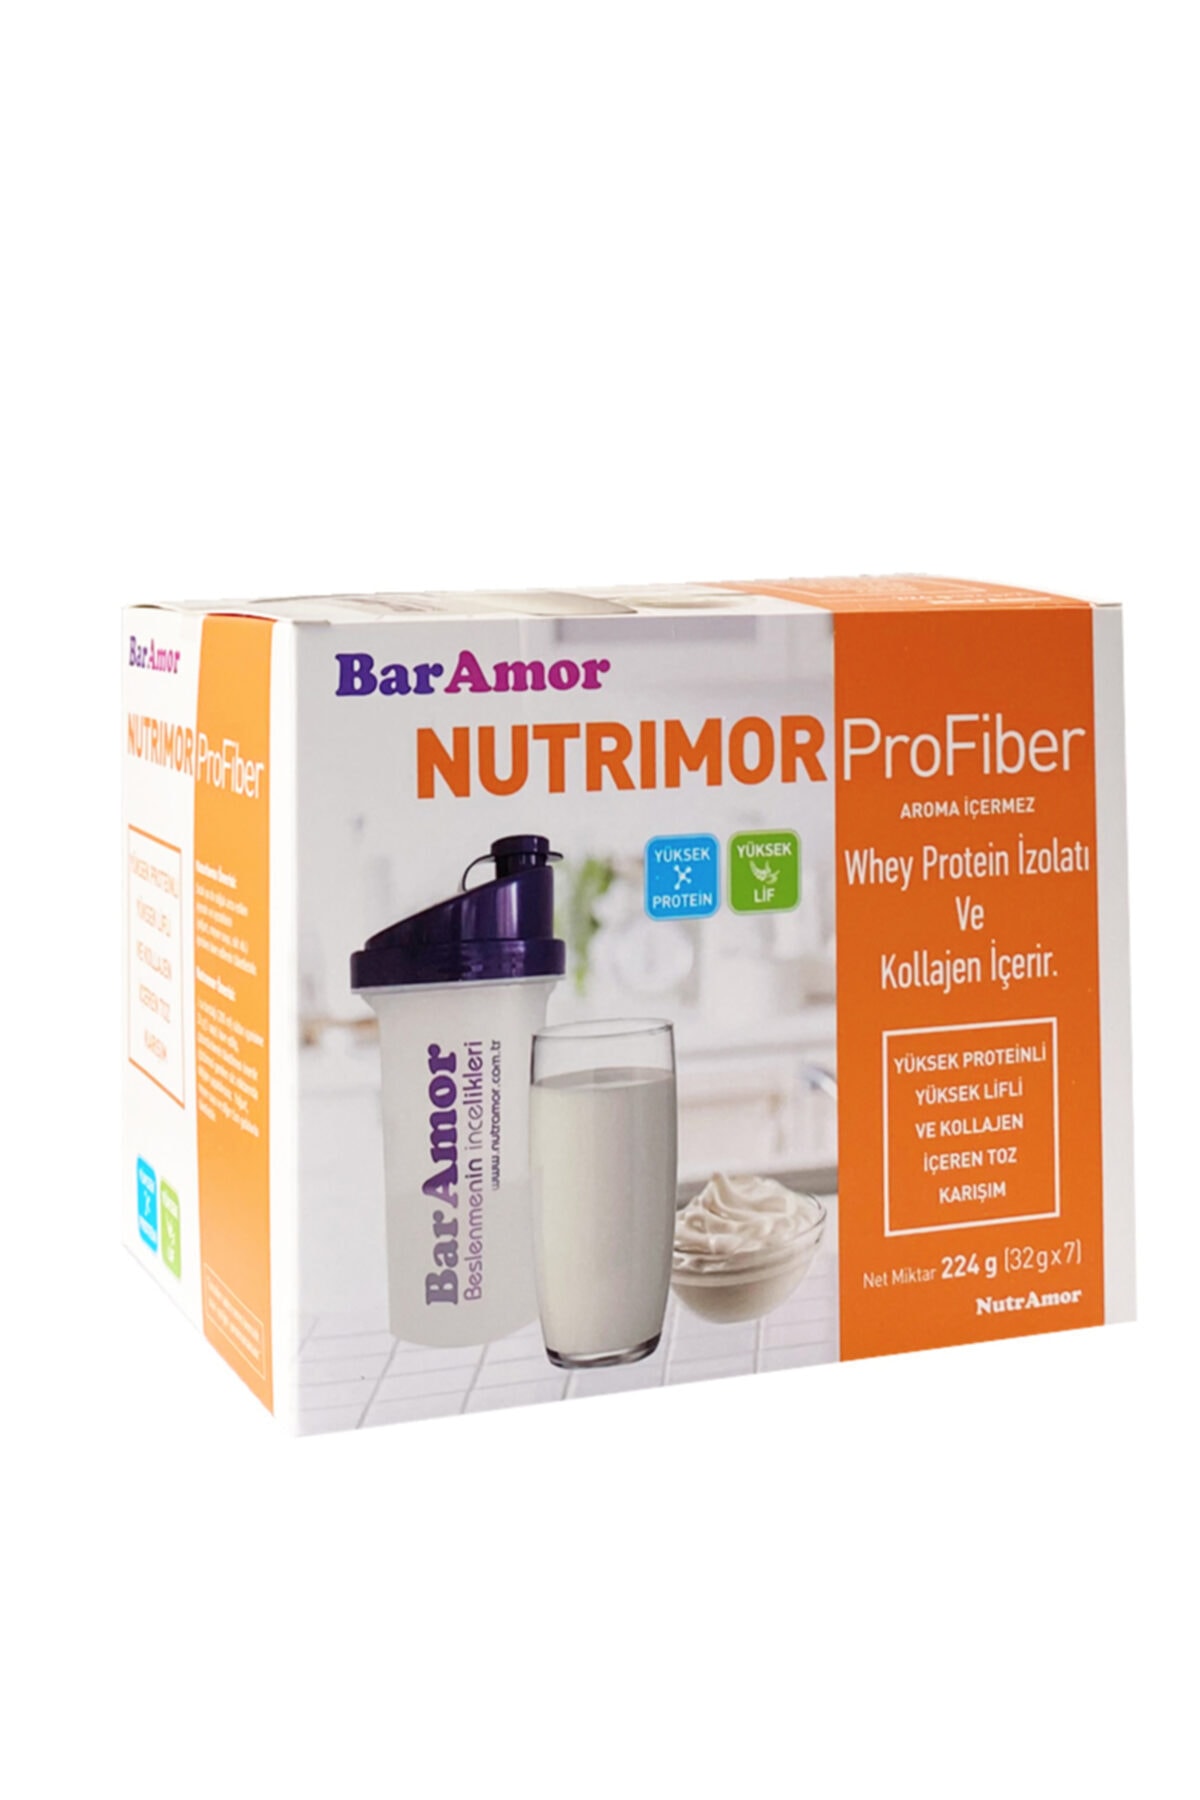 BarAmor – NUTRIMOR ProFiber – Yüksek Proteinli ve Yüksek Lifli Toz Karışım (32 g x 7)